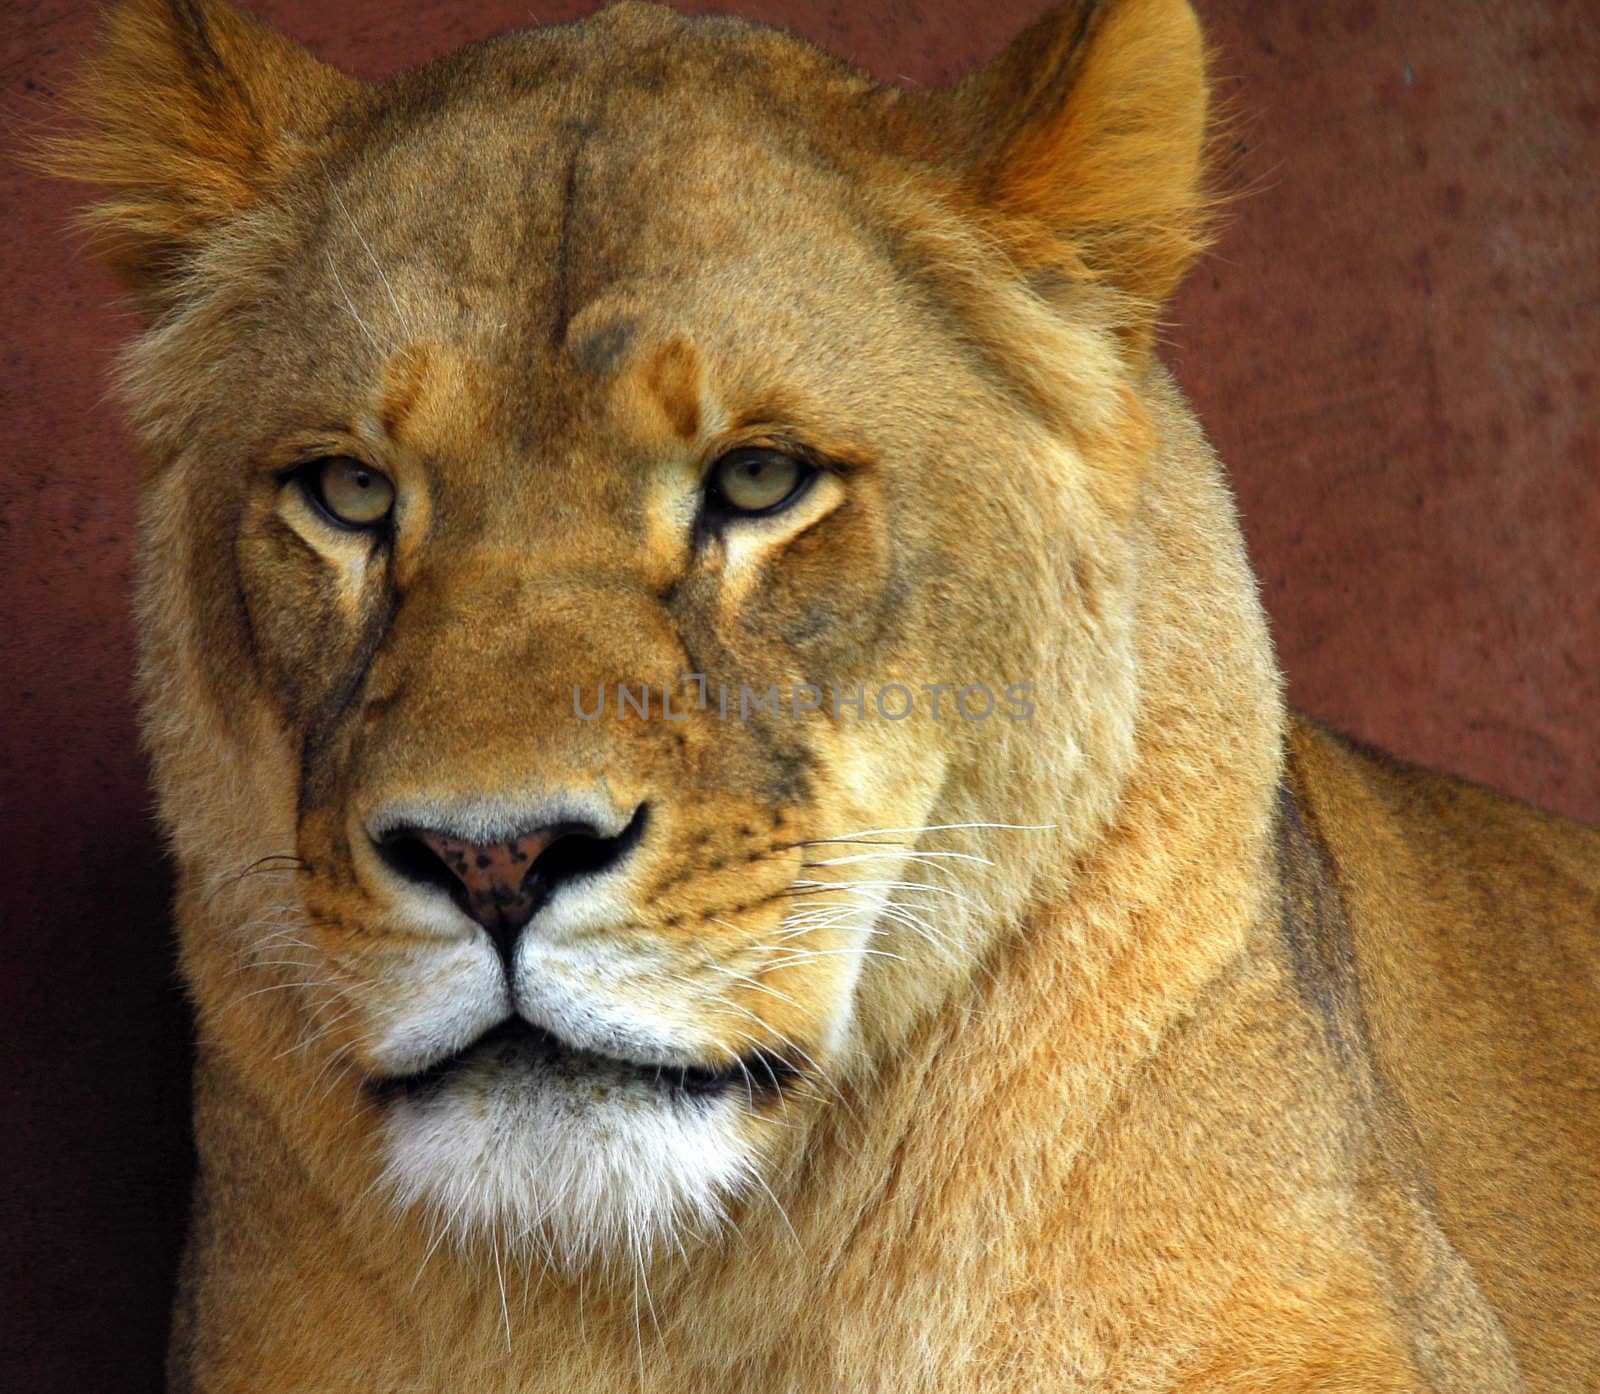 Female Lion by nialat